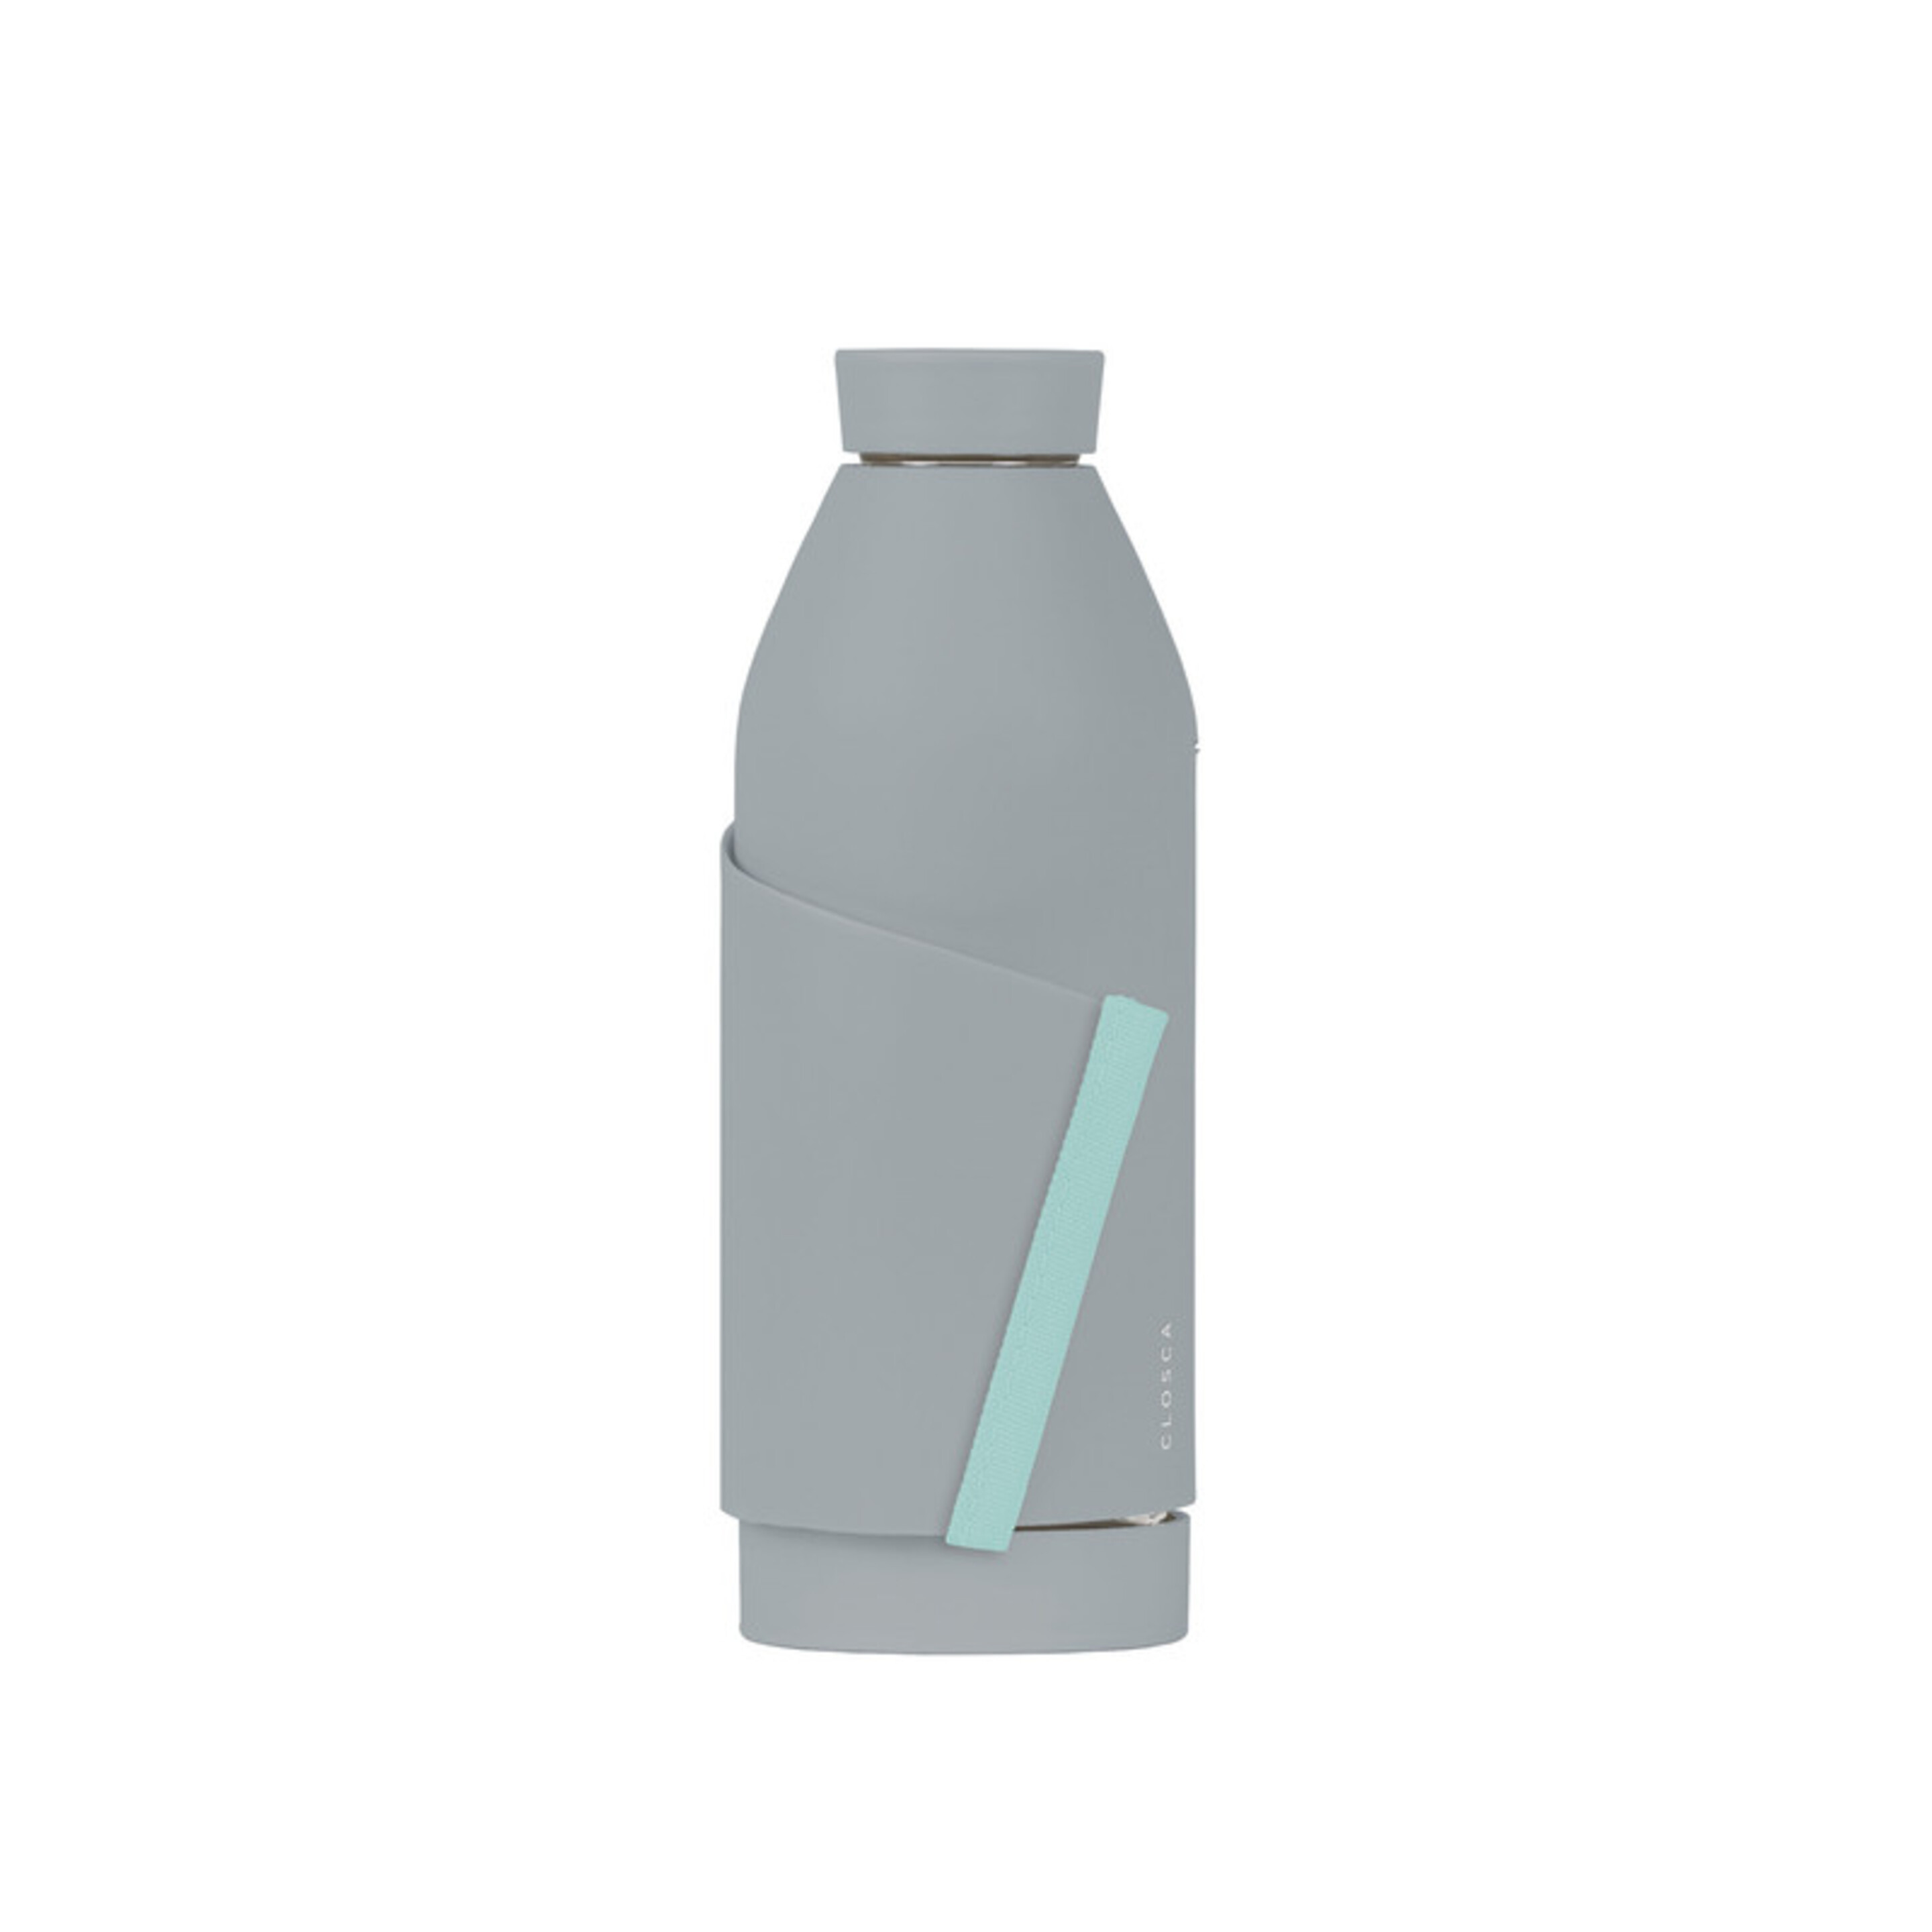 Botella De Agua Clásica De Vidrio De 420 Ml - Gris/Azul - Doble Apertura Y Sistema De Agarre.  MKP